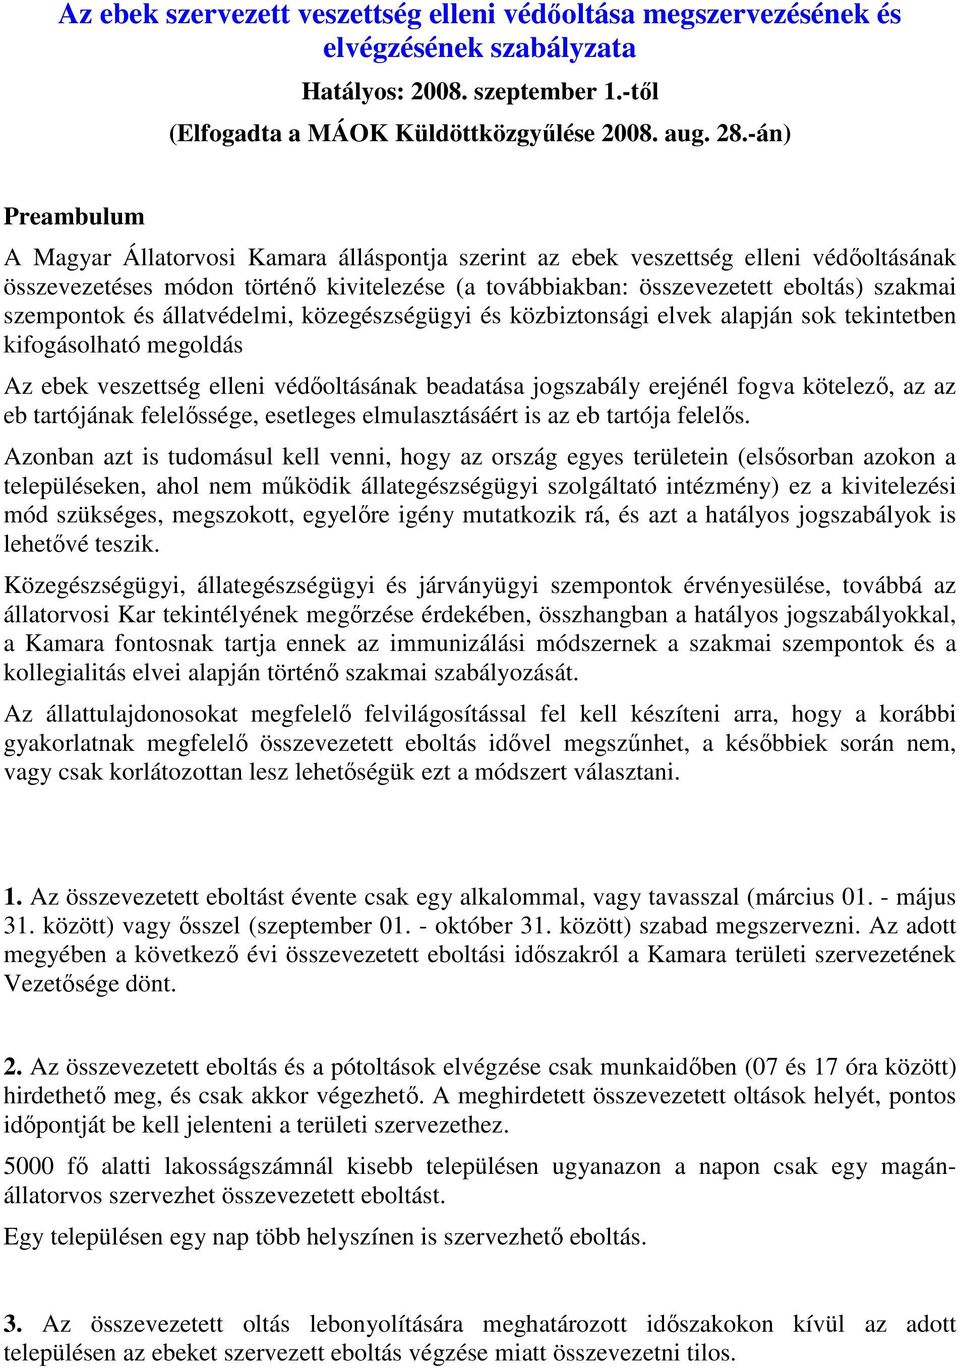 Az ebek szervezett veszettség elleni védőoltása megszervezésének és  elvégzésének szabályzata - PDF Ingyenes letöltés